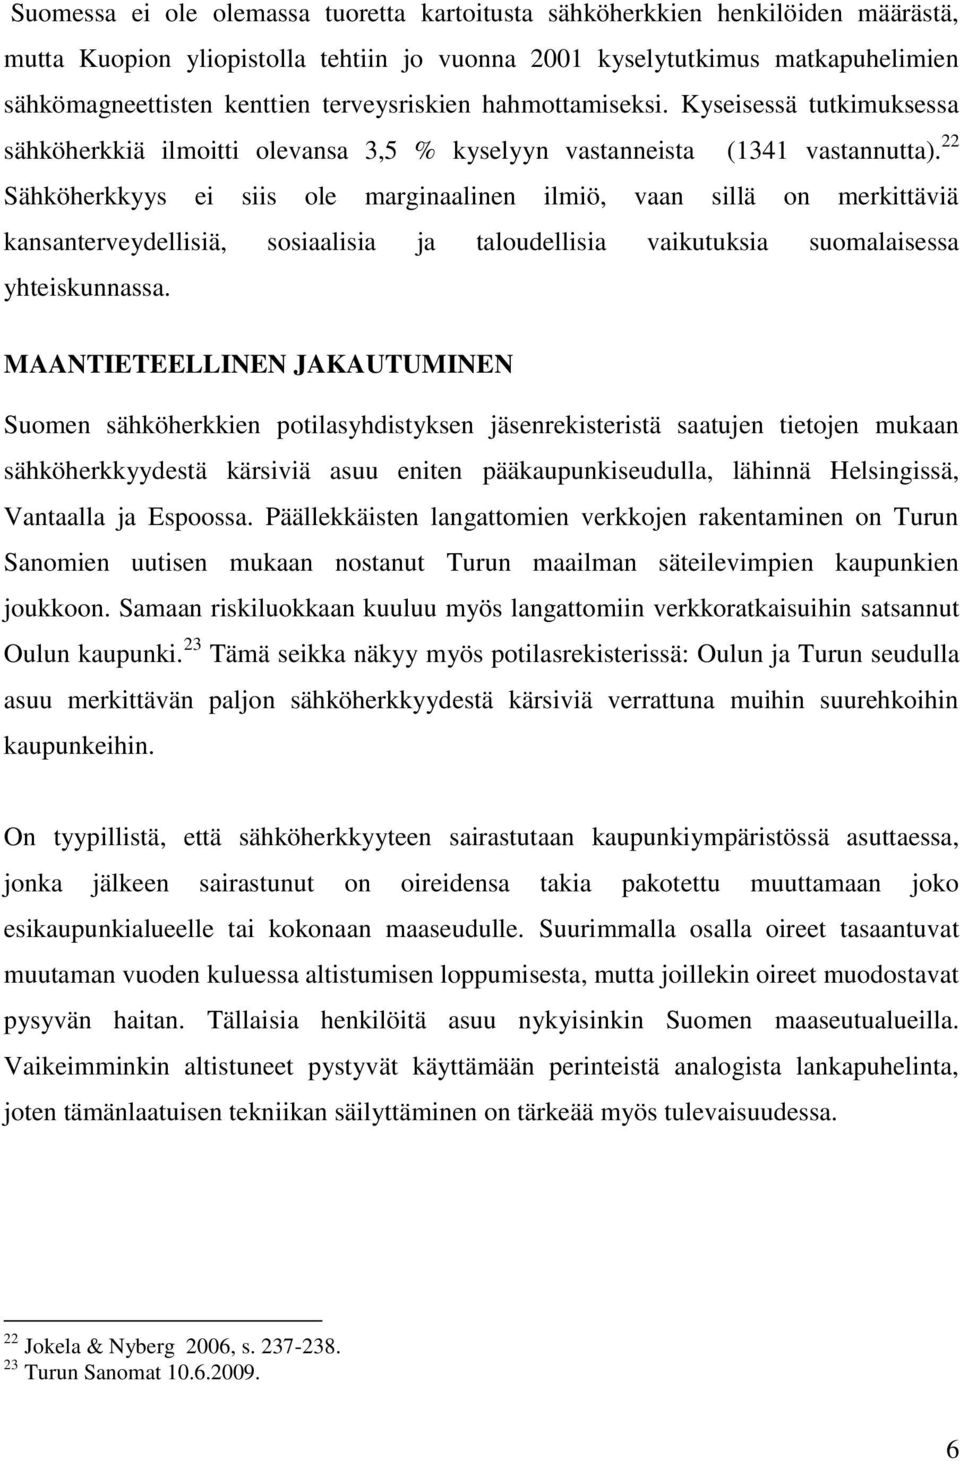 22 Sähköherkkyys ei siis ole marginaalinen ilmiö, vaan sillä on merkittäviä kansanterveydellisiä, sosiaalisia ja taloudellisia vaikutuksia suomalaisessa yhteiskunnassa.